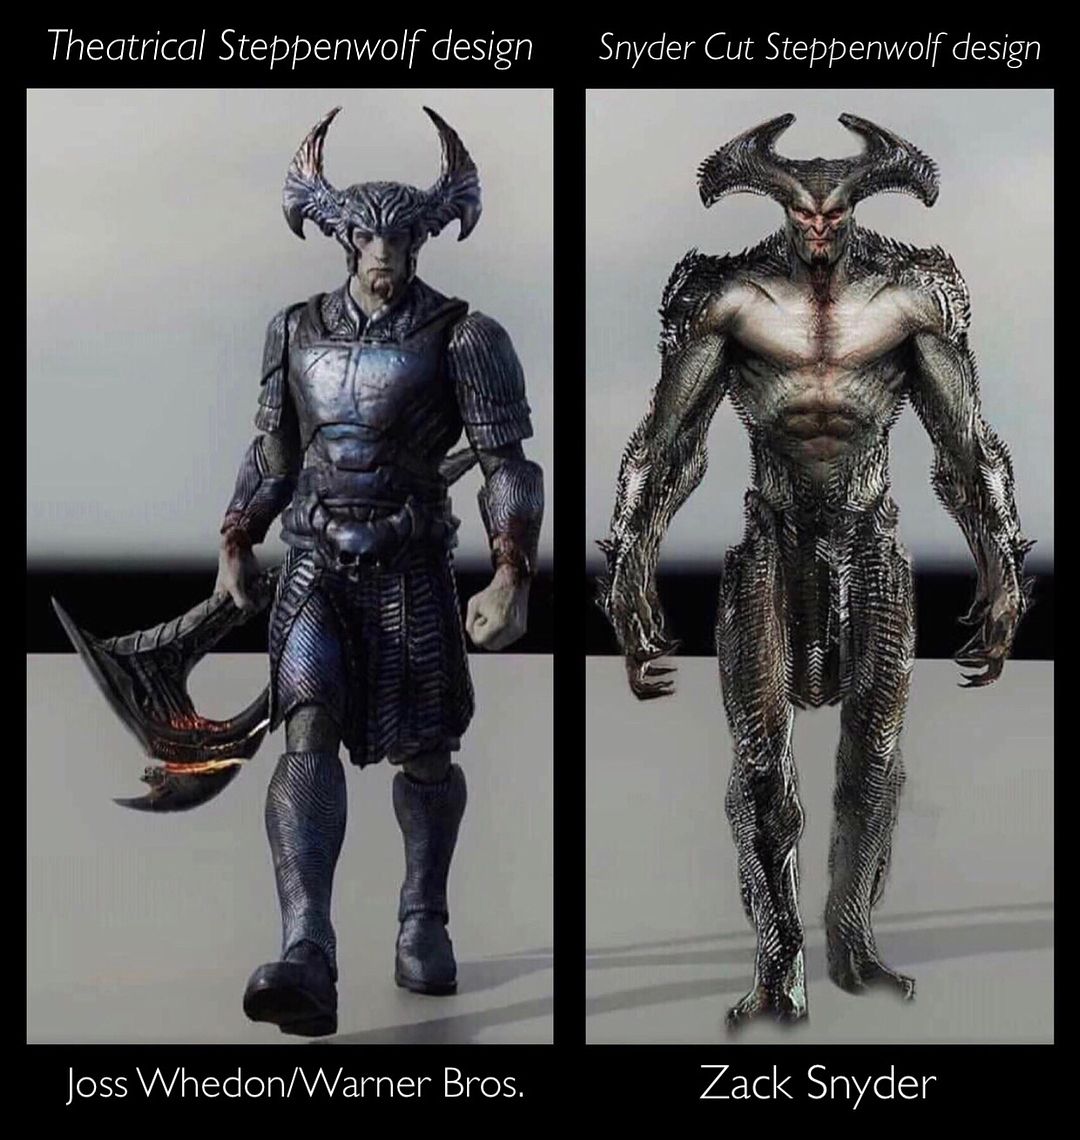 Zack Snyder muestra el diseño original más agresivo y oscuro de Steppenwolf  - Cultura Geek